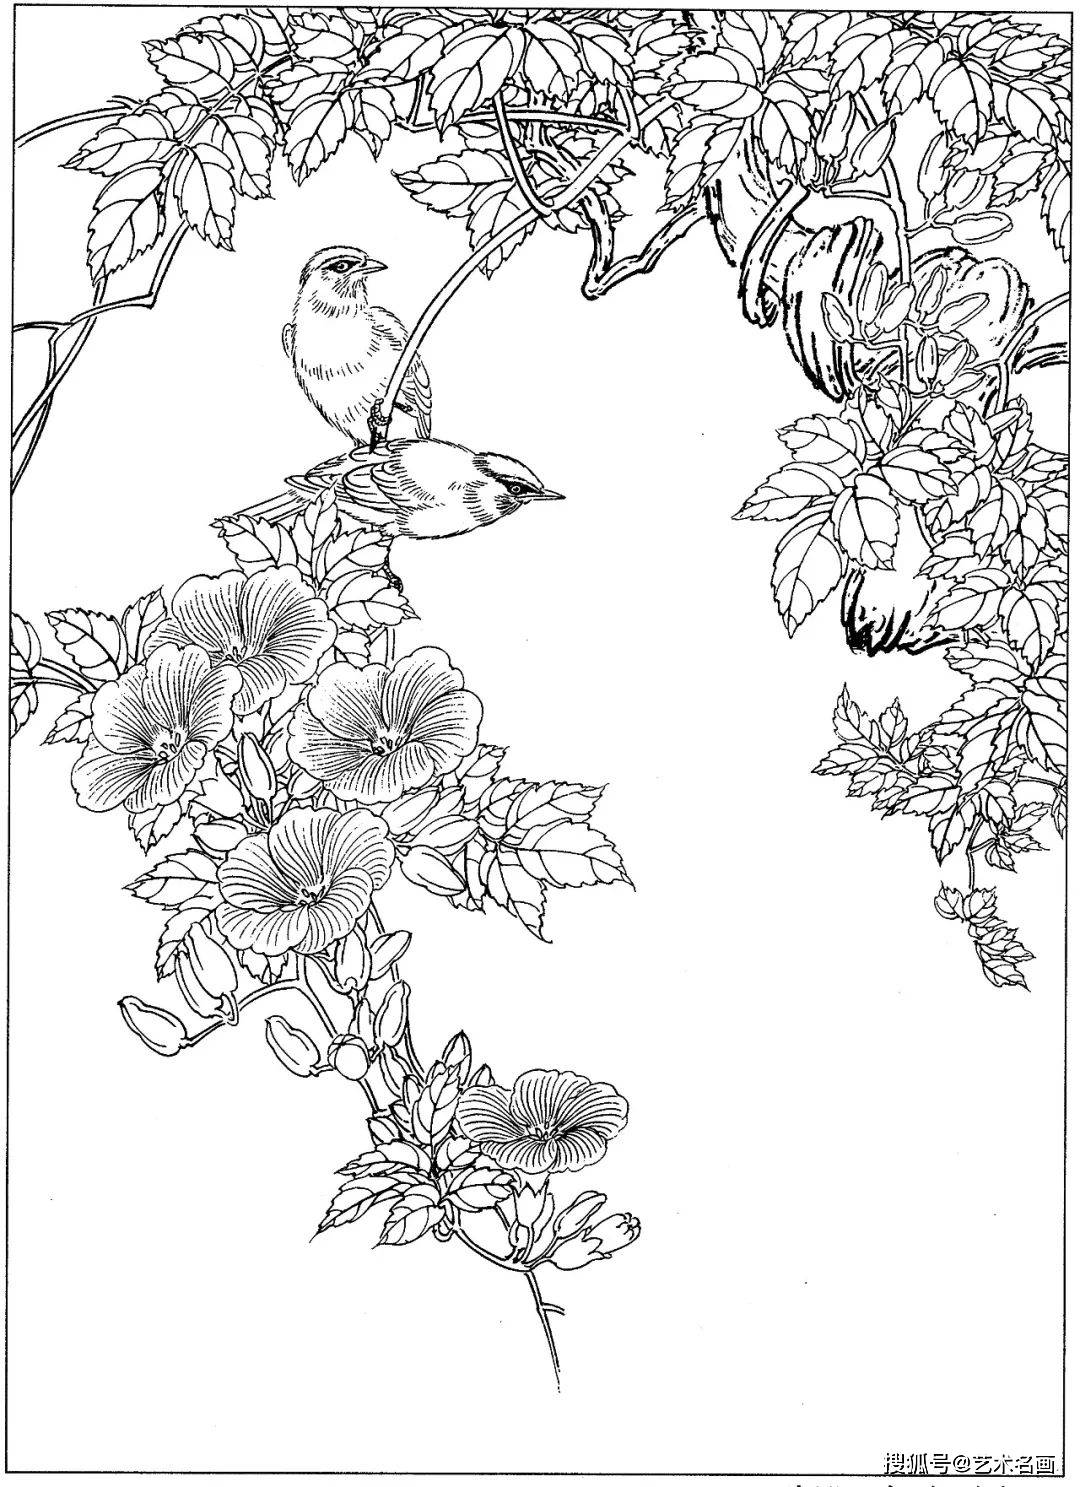 一组40幅工笔花鸟小品白描素材图︱艺术名画_手机搜狐网